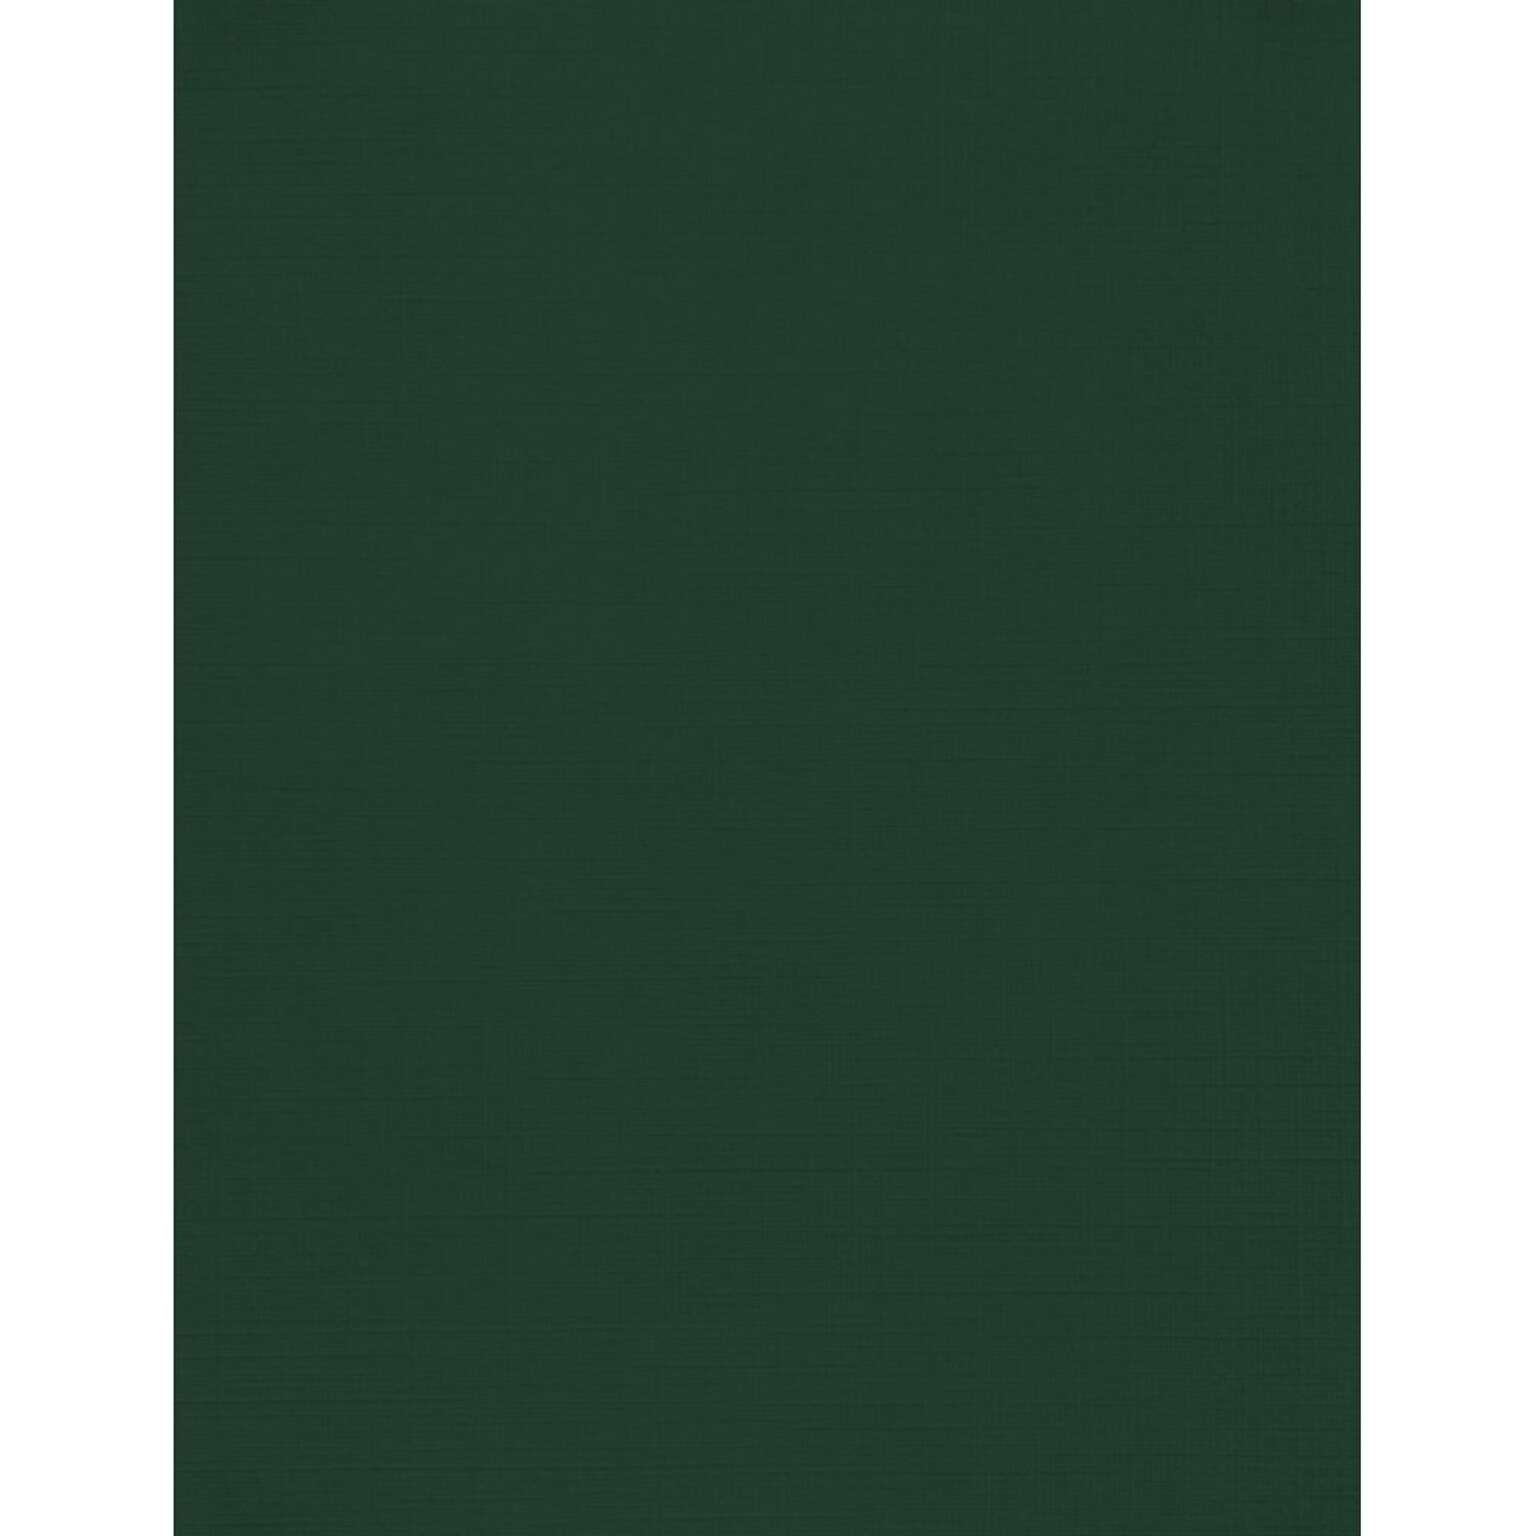 JAM PAPER 8.5 x 11 Color Cardstock, Green Linen, 50/pack  (81211-C-GNLI-50)